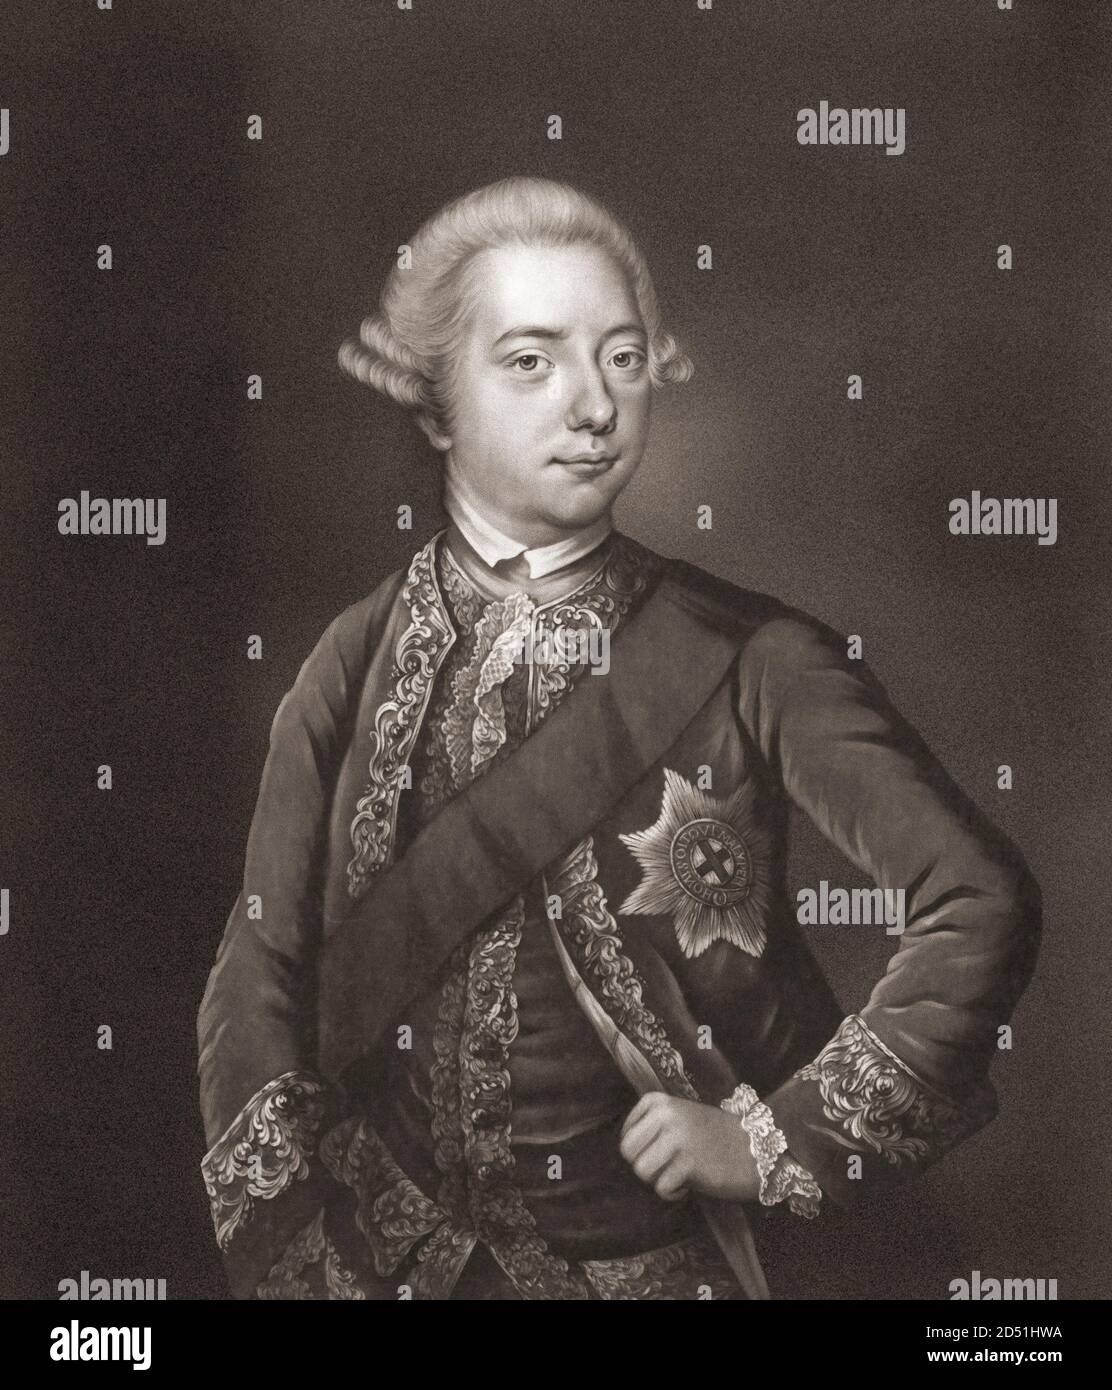 Wilhelm V., Prinz von Oranien, 1748 – 1806. Letzter Stadthalter der Niederländischen Republik. Auch bekannt als Prinz von Nassau-Oranien. Nach einem Werk von James Watson aus dem 18. Jahrhundert. Stockfoto